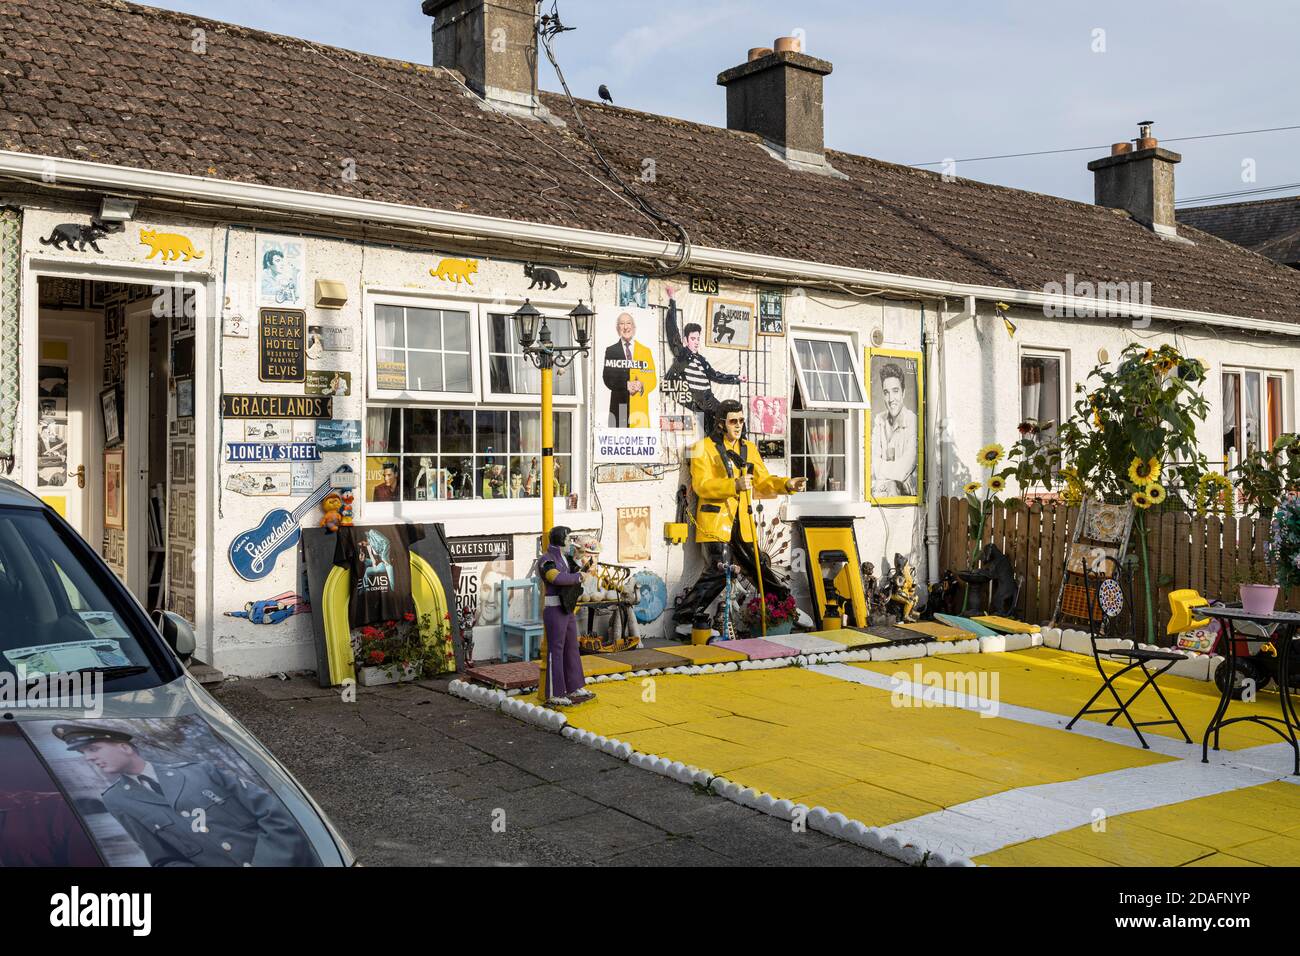 Casa Elvis, decorada con objetos de interés y banderas americanas, en Kilkenny, condado de Kilkenny, Irlanda Foto de stock